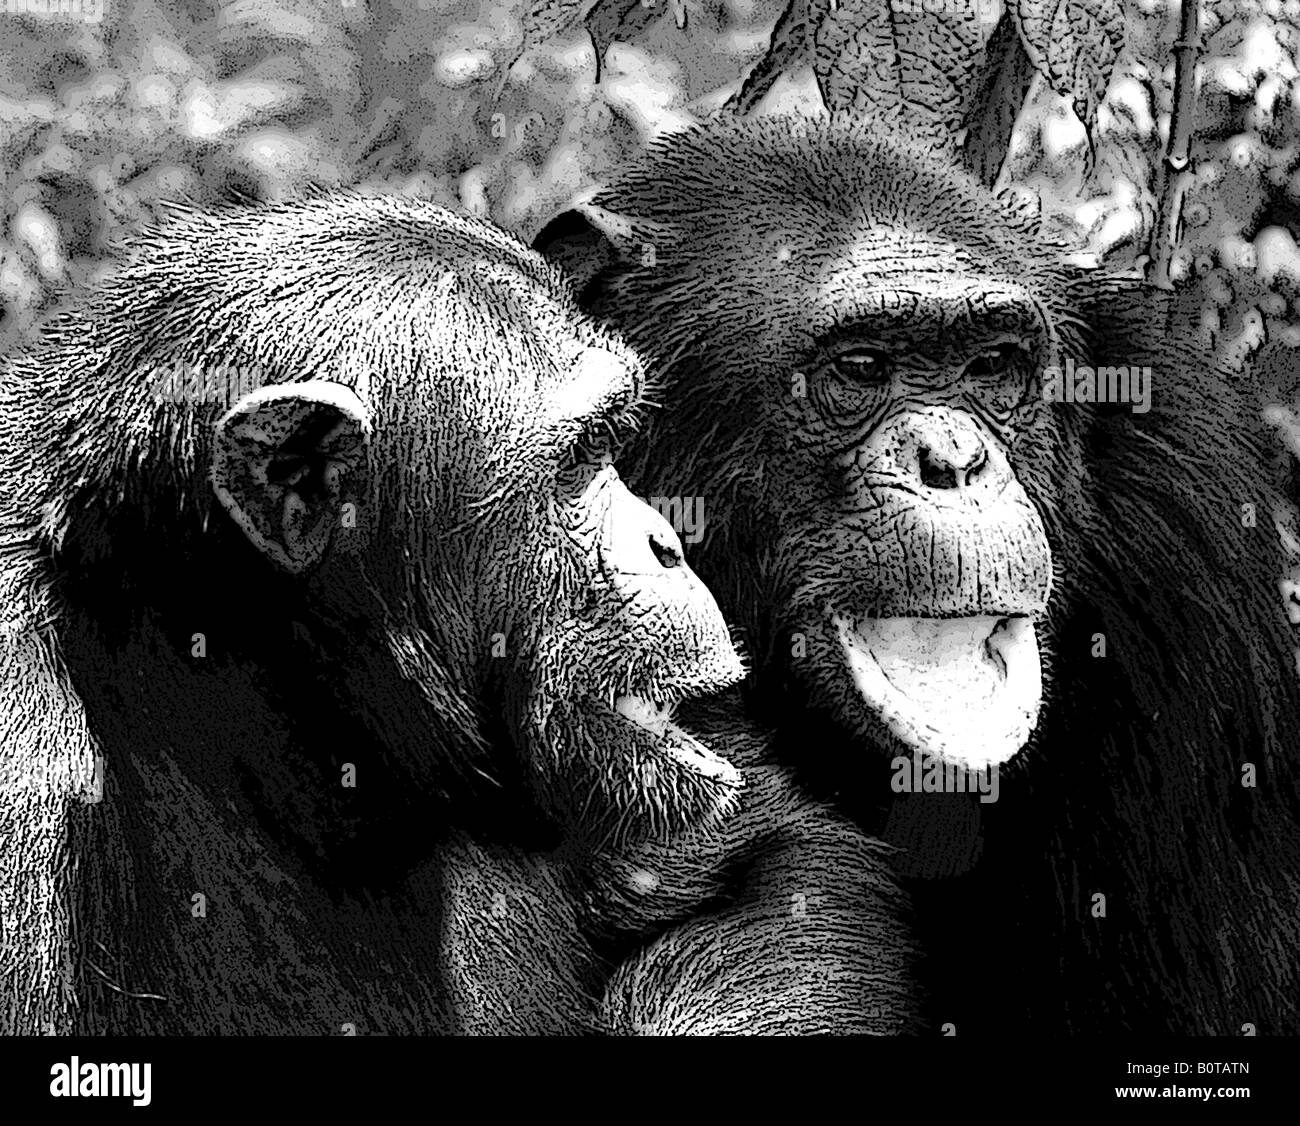 Chimpanzee, Pan troglodytes Stock Photo